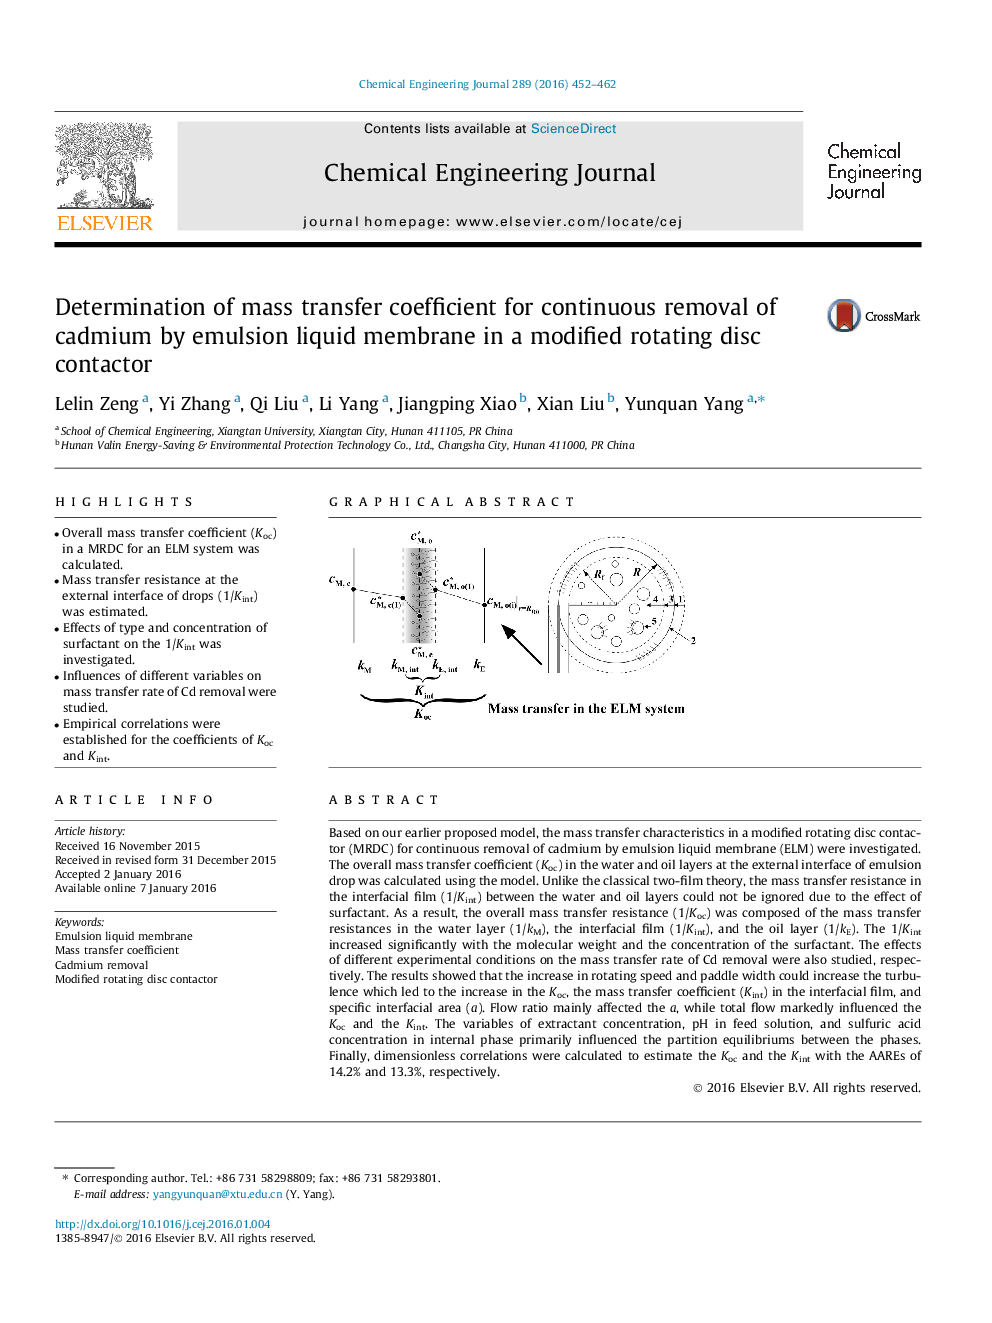 تعیین ضریب انتقال جرم برای حذف مداوم کادمیم توسط غشاء مایع امولسیونی در یک کنتاکتور دیسک چرخش اصلاح شده 